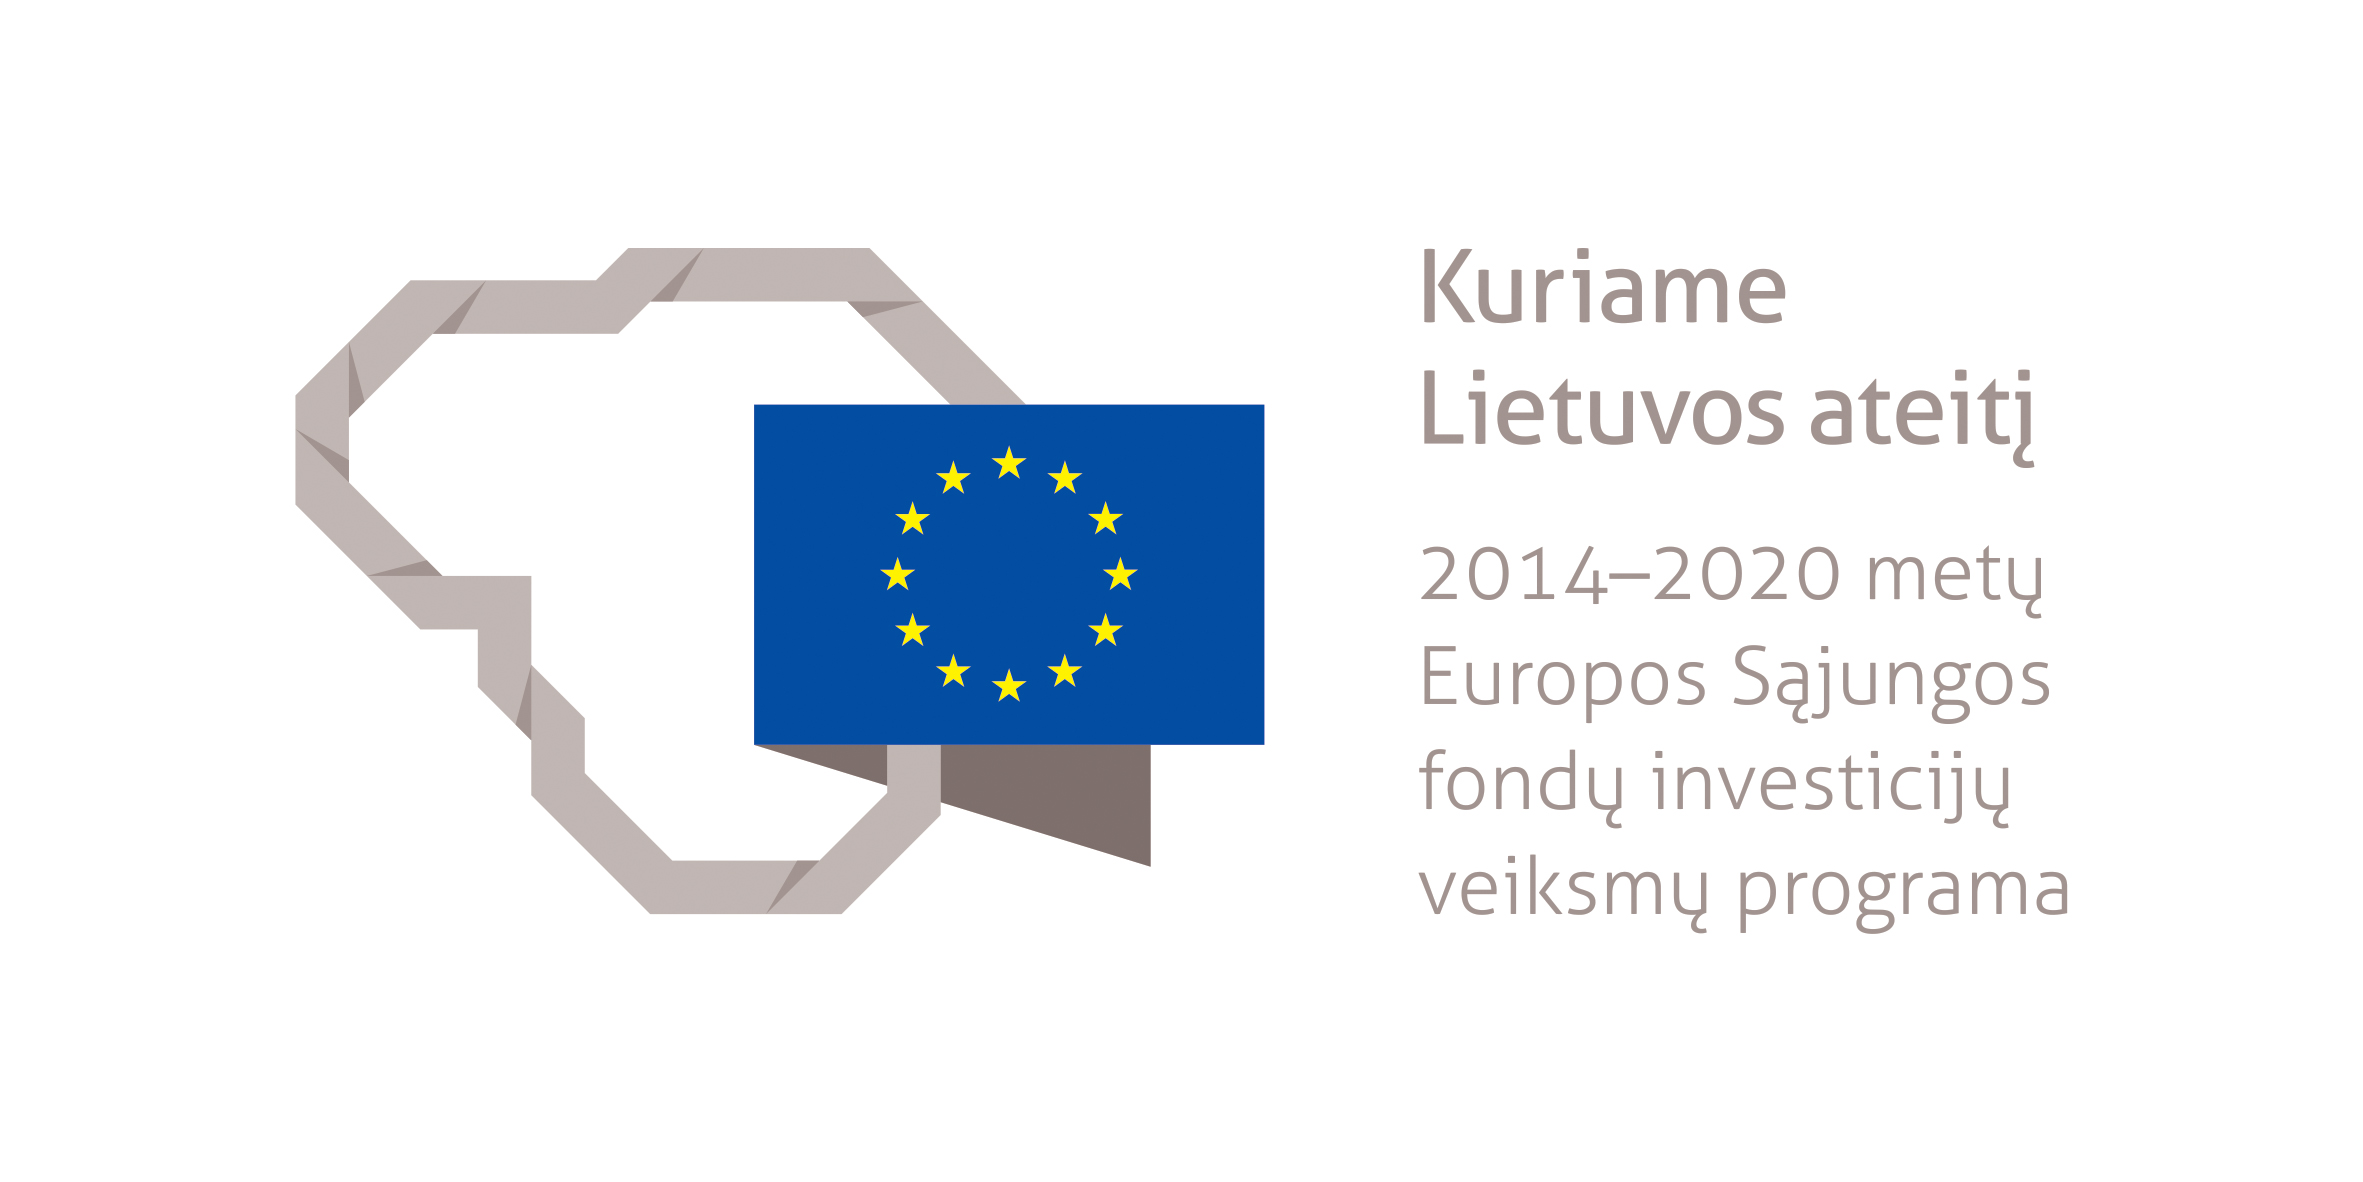 Projektas bendrai finansuotas iš Europos socialinio fondo lėšų (projekto nr. 09.3.3-LMT-K-712-25-0159) pagal dotacijos sutartį su Lietuvos mokslo taryba (LMTLT)